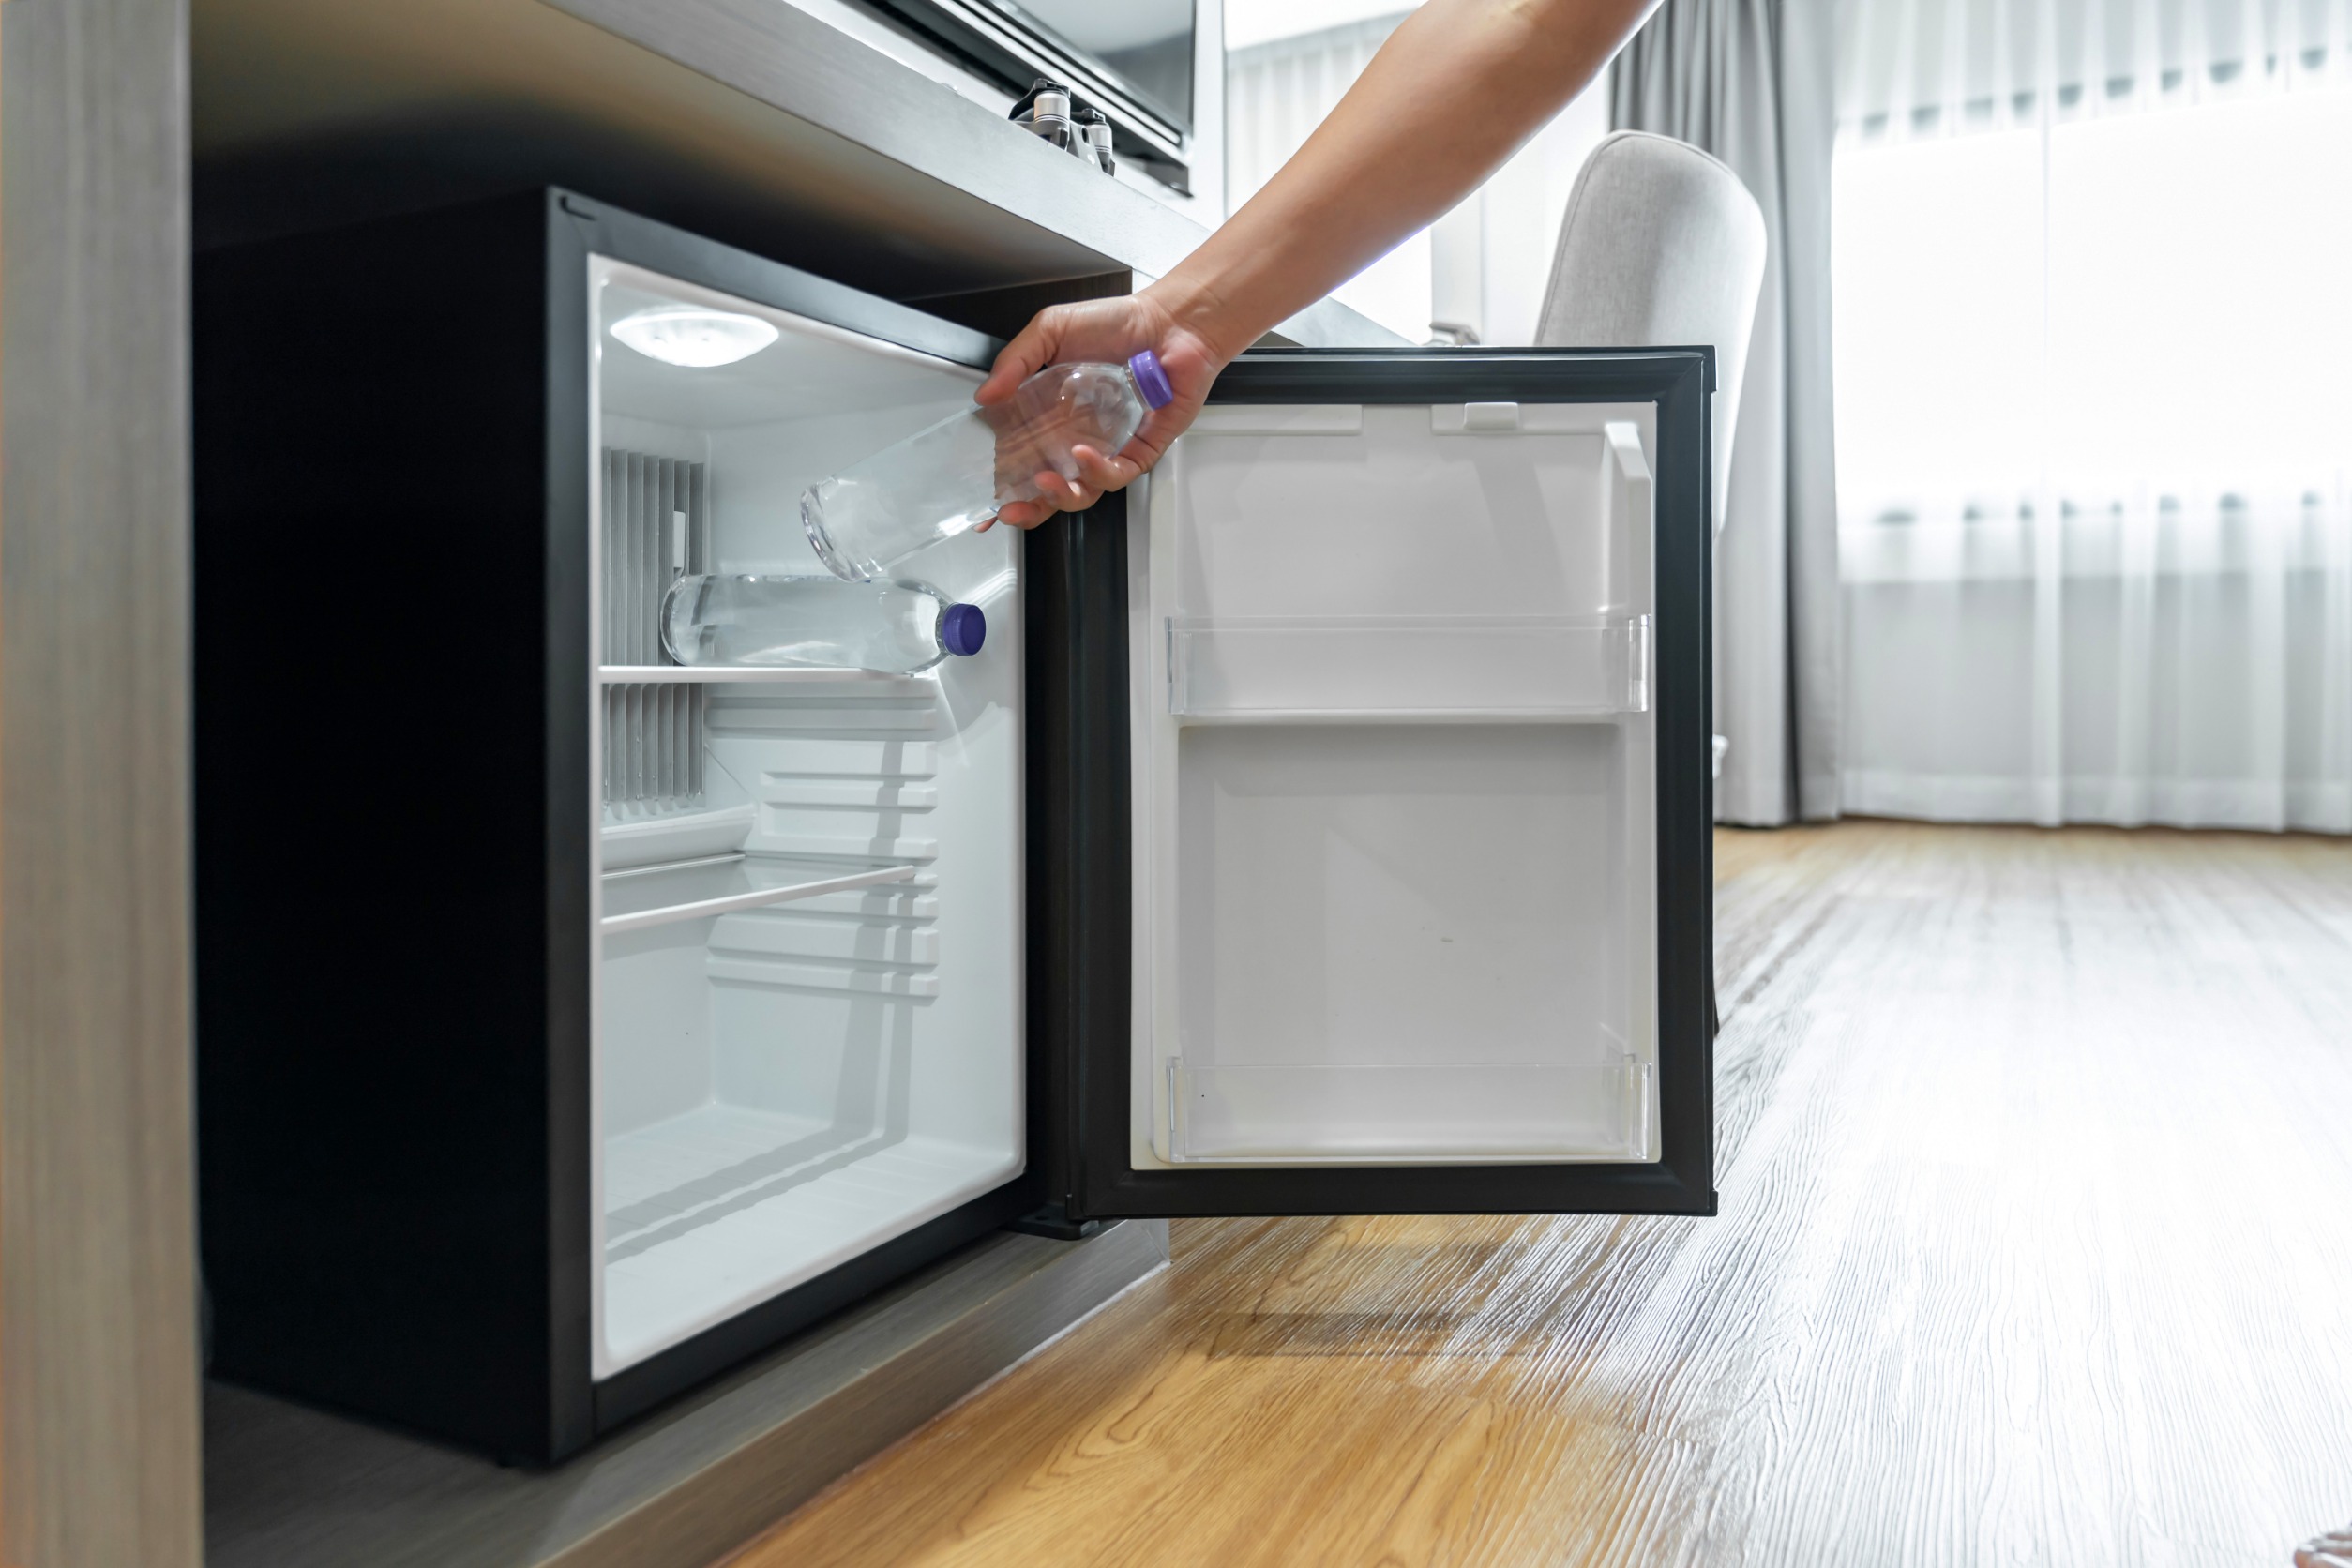 Lire la suite à propos de l’article Électroménager : acheter un réfrigérateur pas cher, est-ce une bonne affaire ?